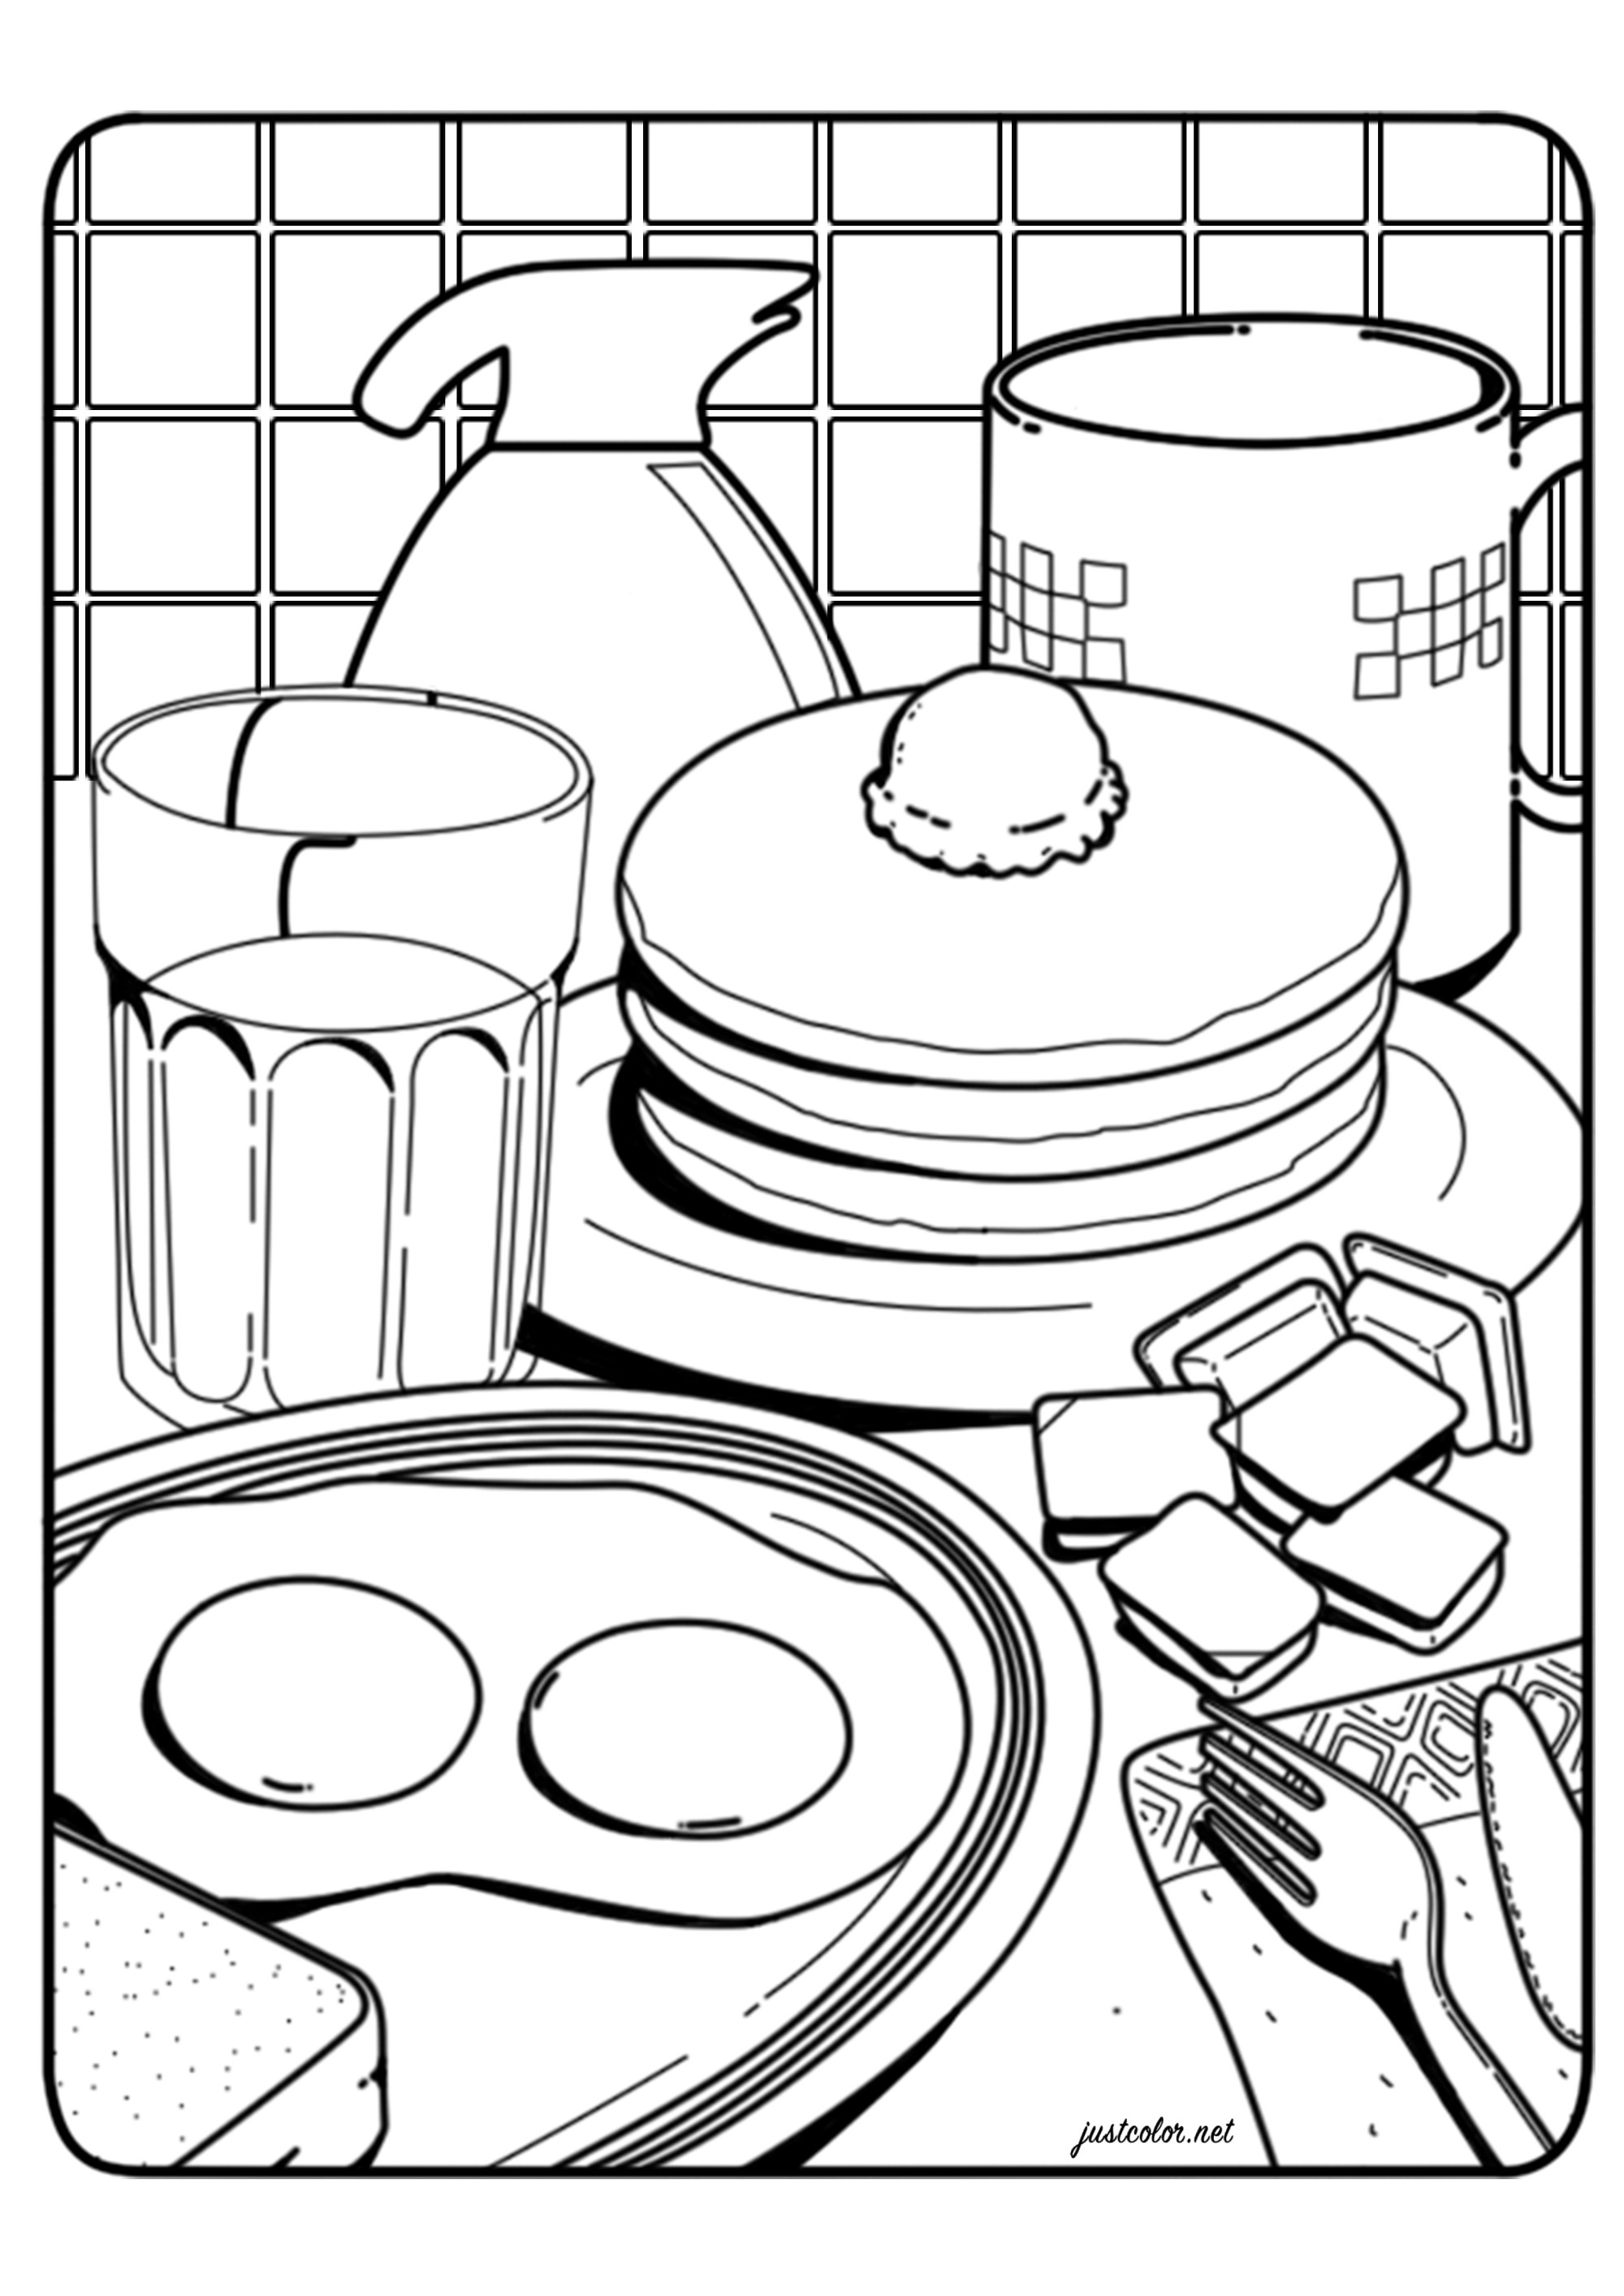 Un buen desayuno con huevos fritos, tortitas, café...  una página para colorear inspirada en la ilustración 'El desayuno' de Lauren Martin, Artista : Warrick D